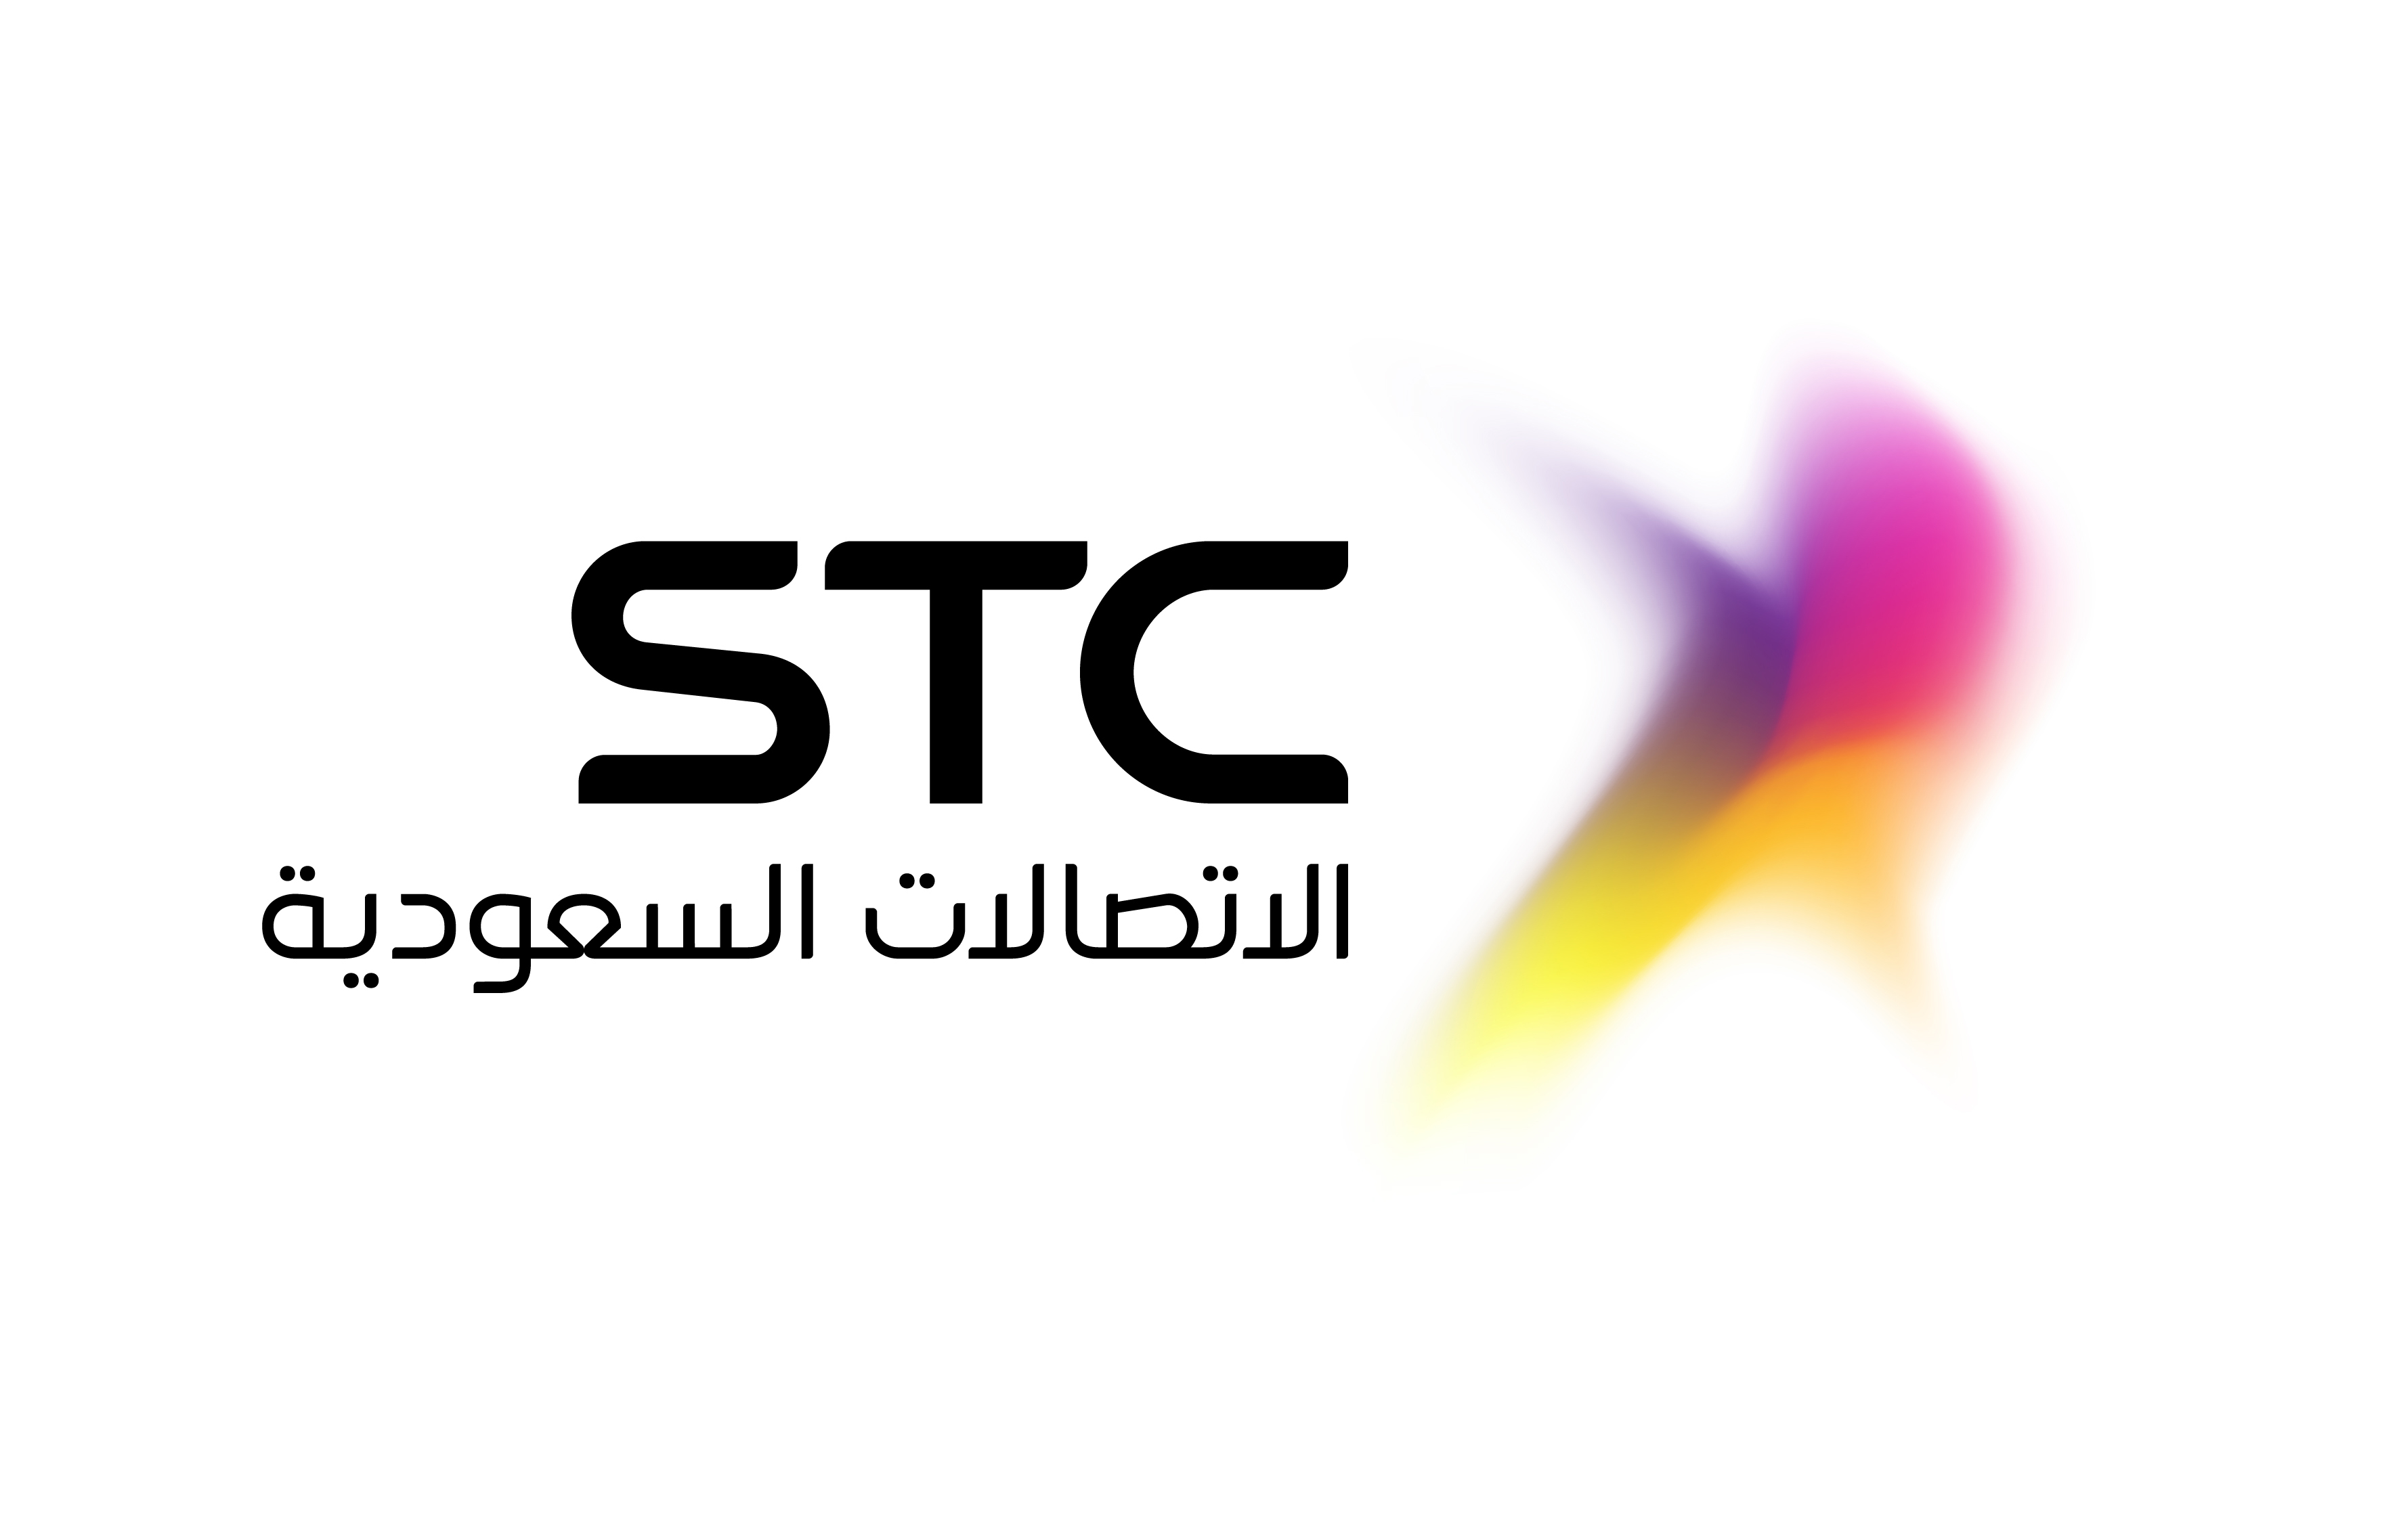 الاتصالات السعودية توقع اتفاقية النقل التلفزيوني والرقمي والرعايات التسويقية مع هيئة الرياضة